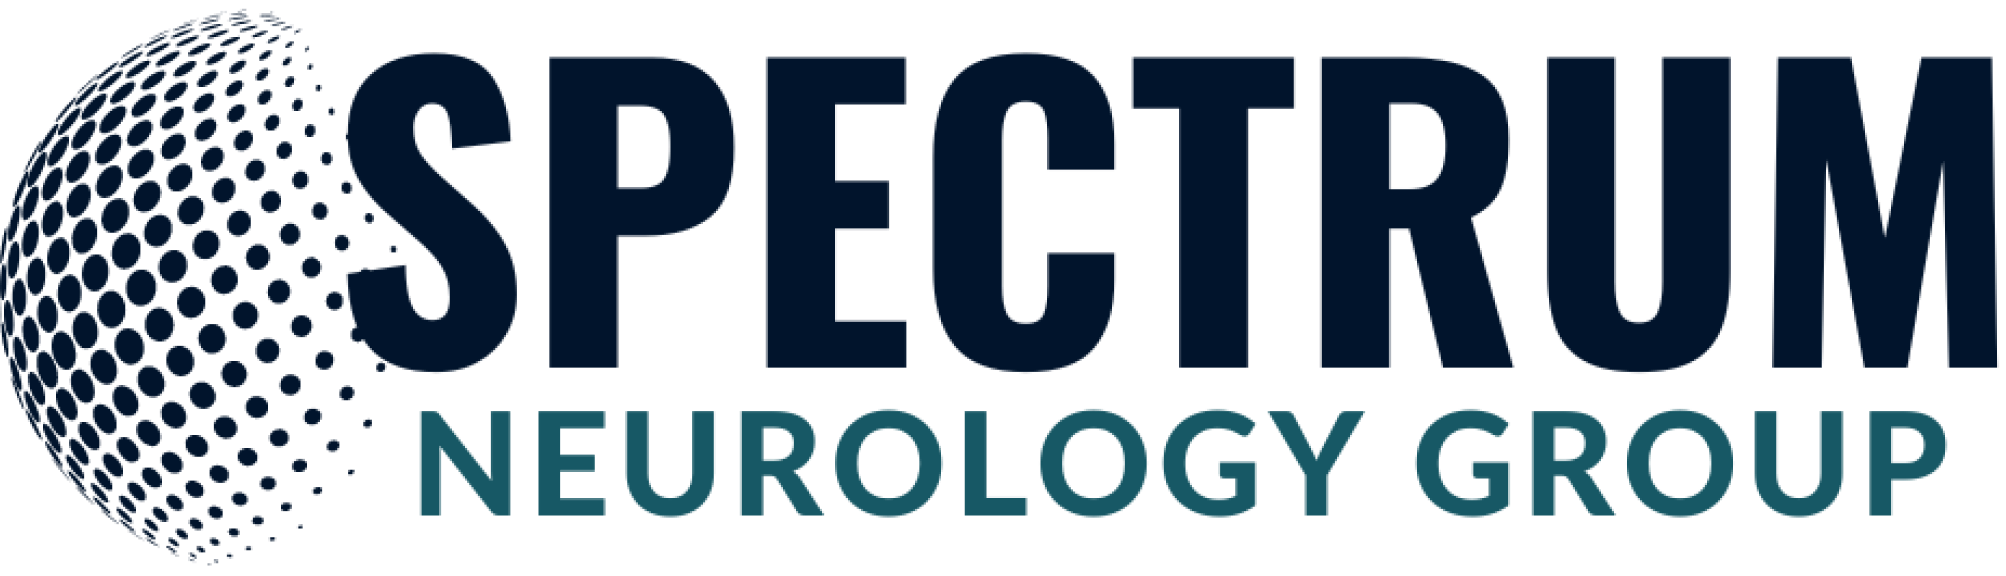 spectrum neurology group logo